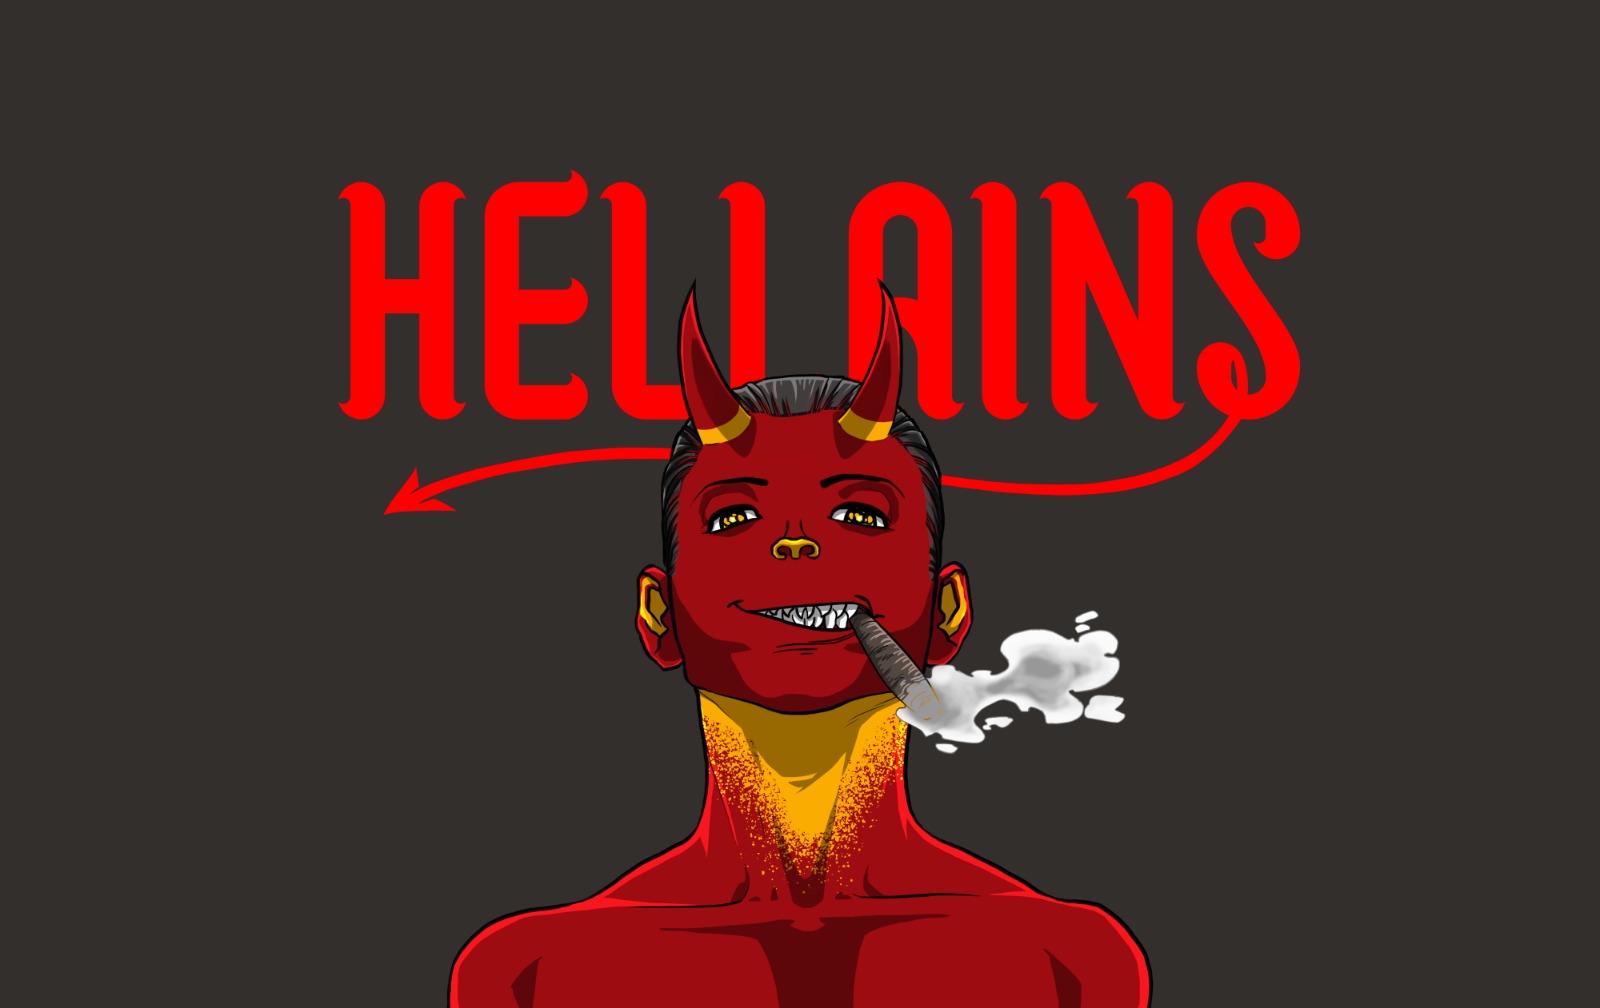 Hellains